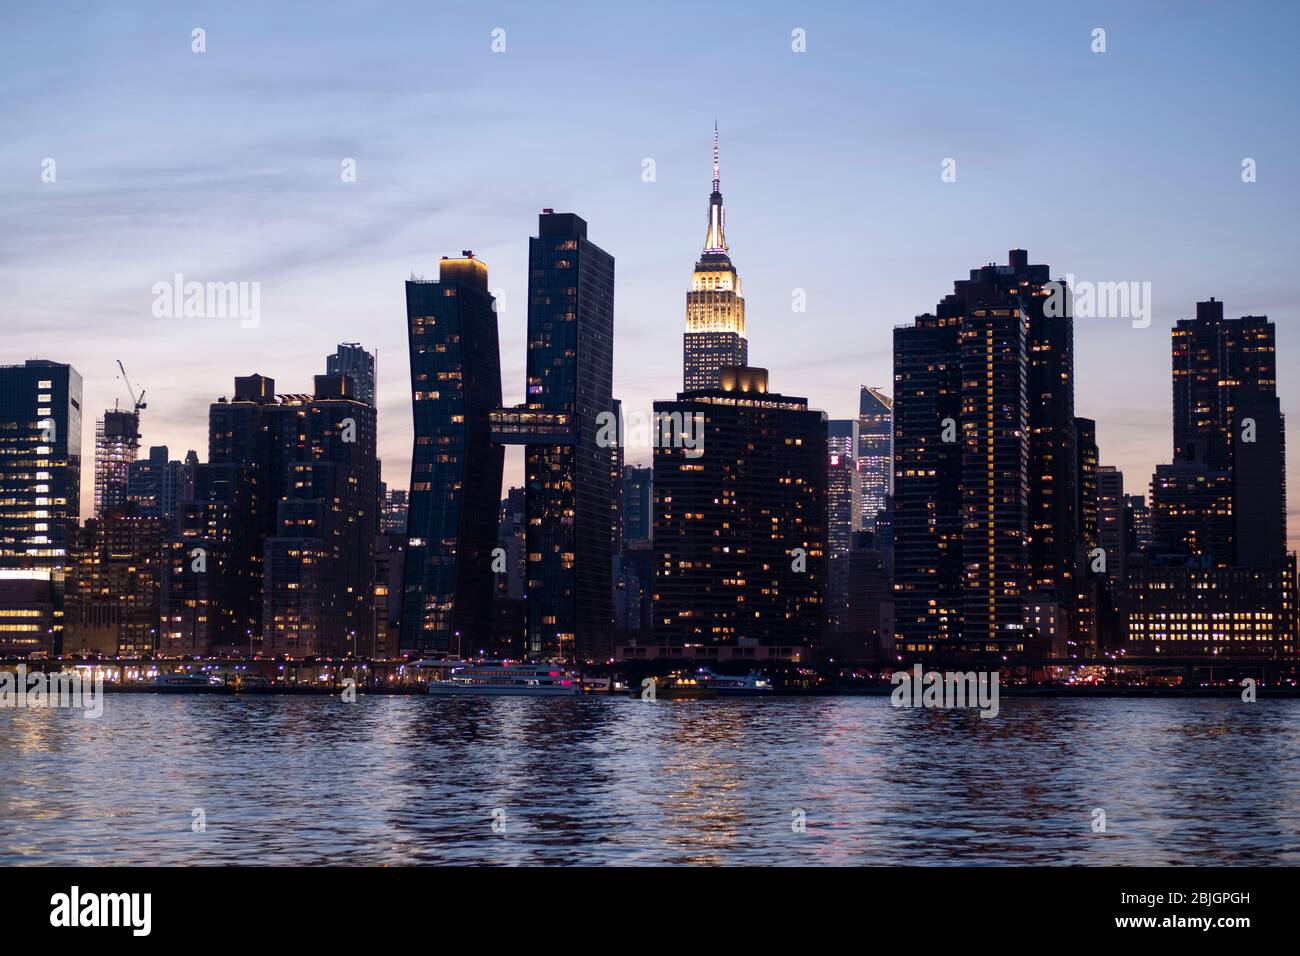 Vue sur le crépuscule de la ligne Skyline de Manhattan avec l'éminent Empire State Building vue de l'East River à New York City Banque D'Images